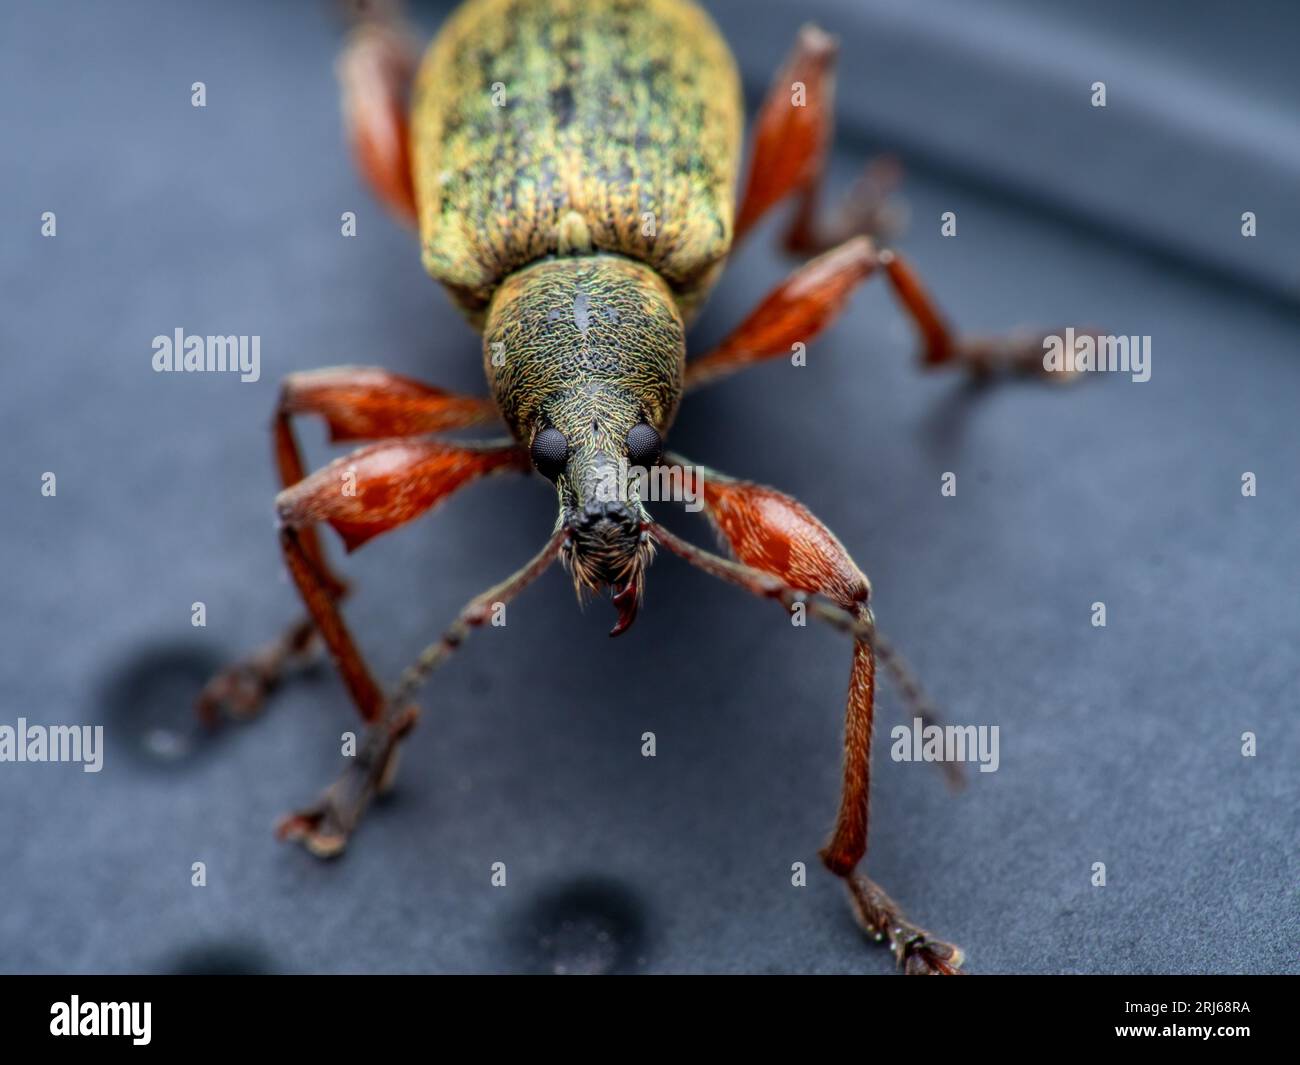 Makroaufnahme eines mit einem Nasen versehenen Insekts mit gelben Beinen Stockfoto